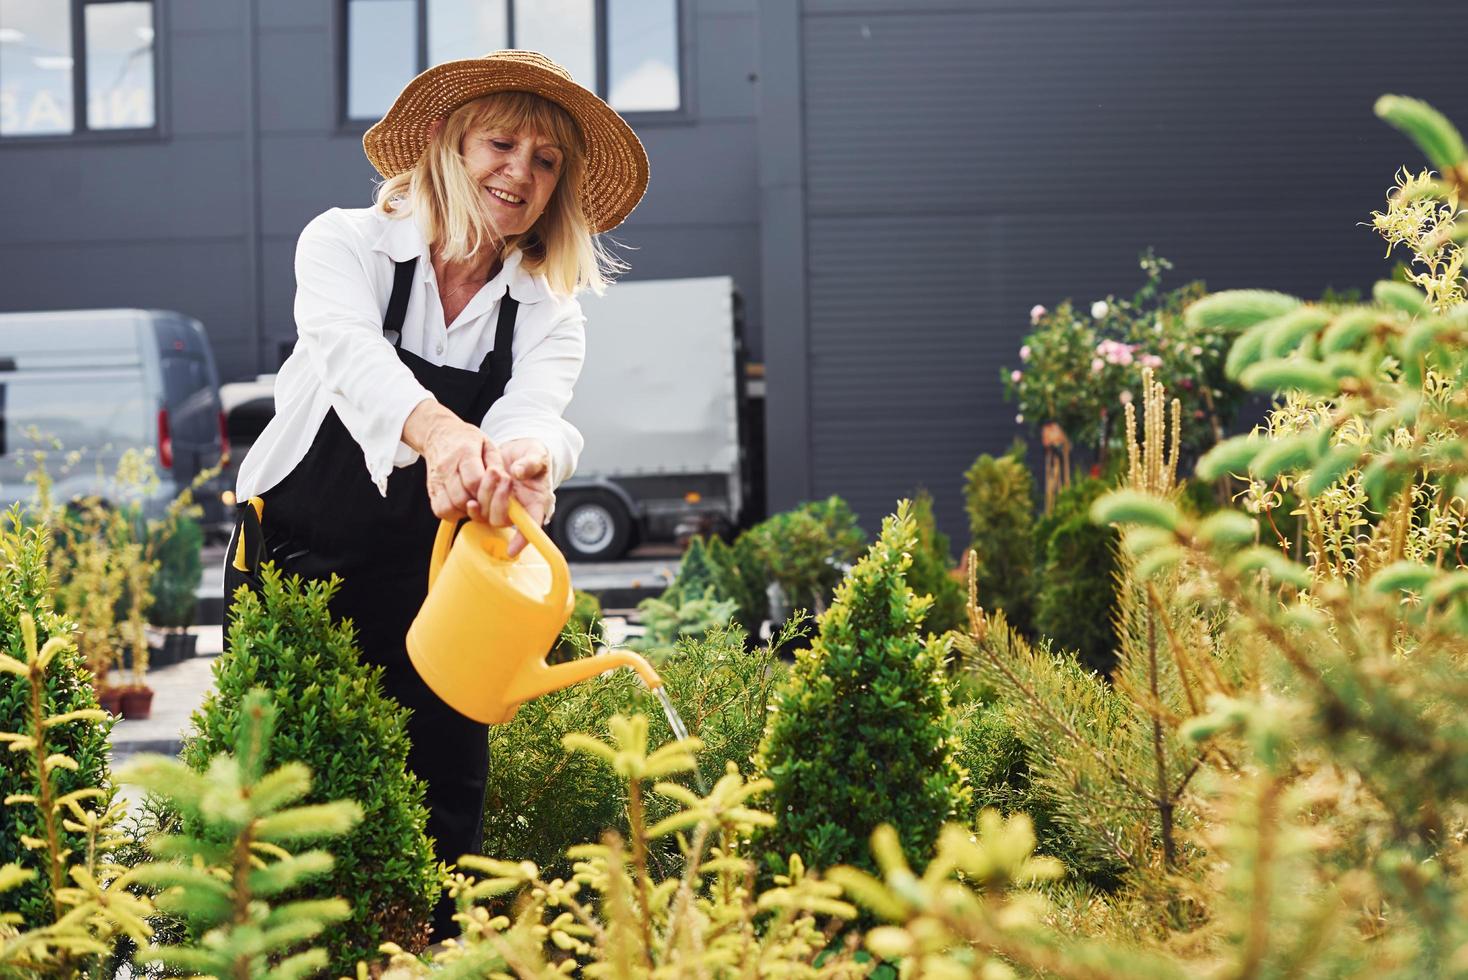 regando plantas. mulher sênior está no jardim durante o dia foto